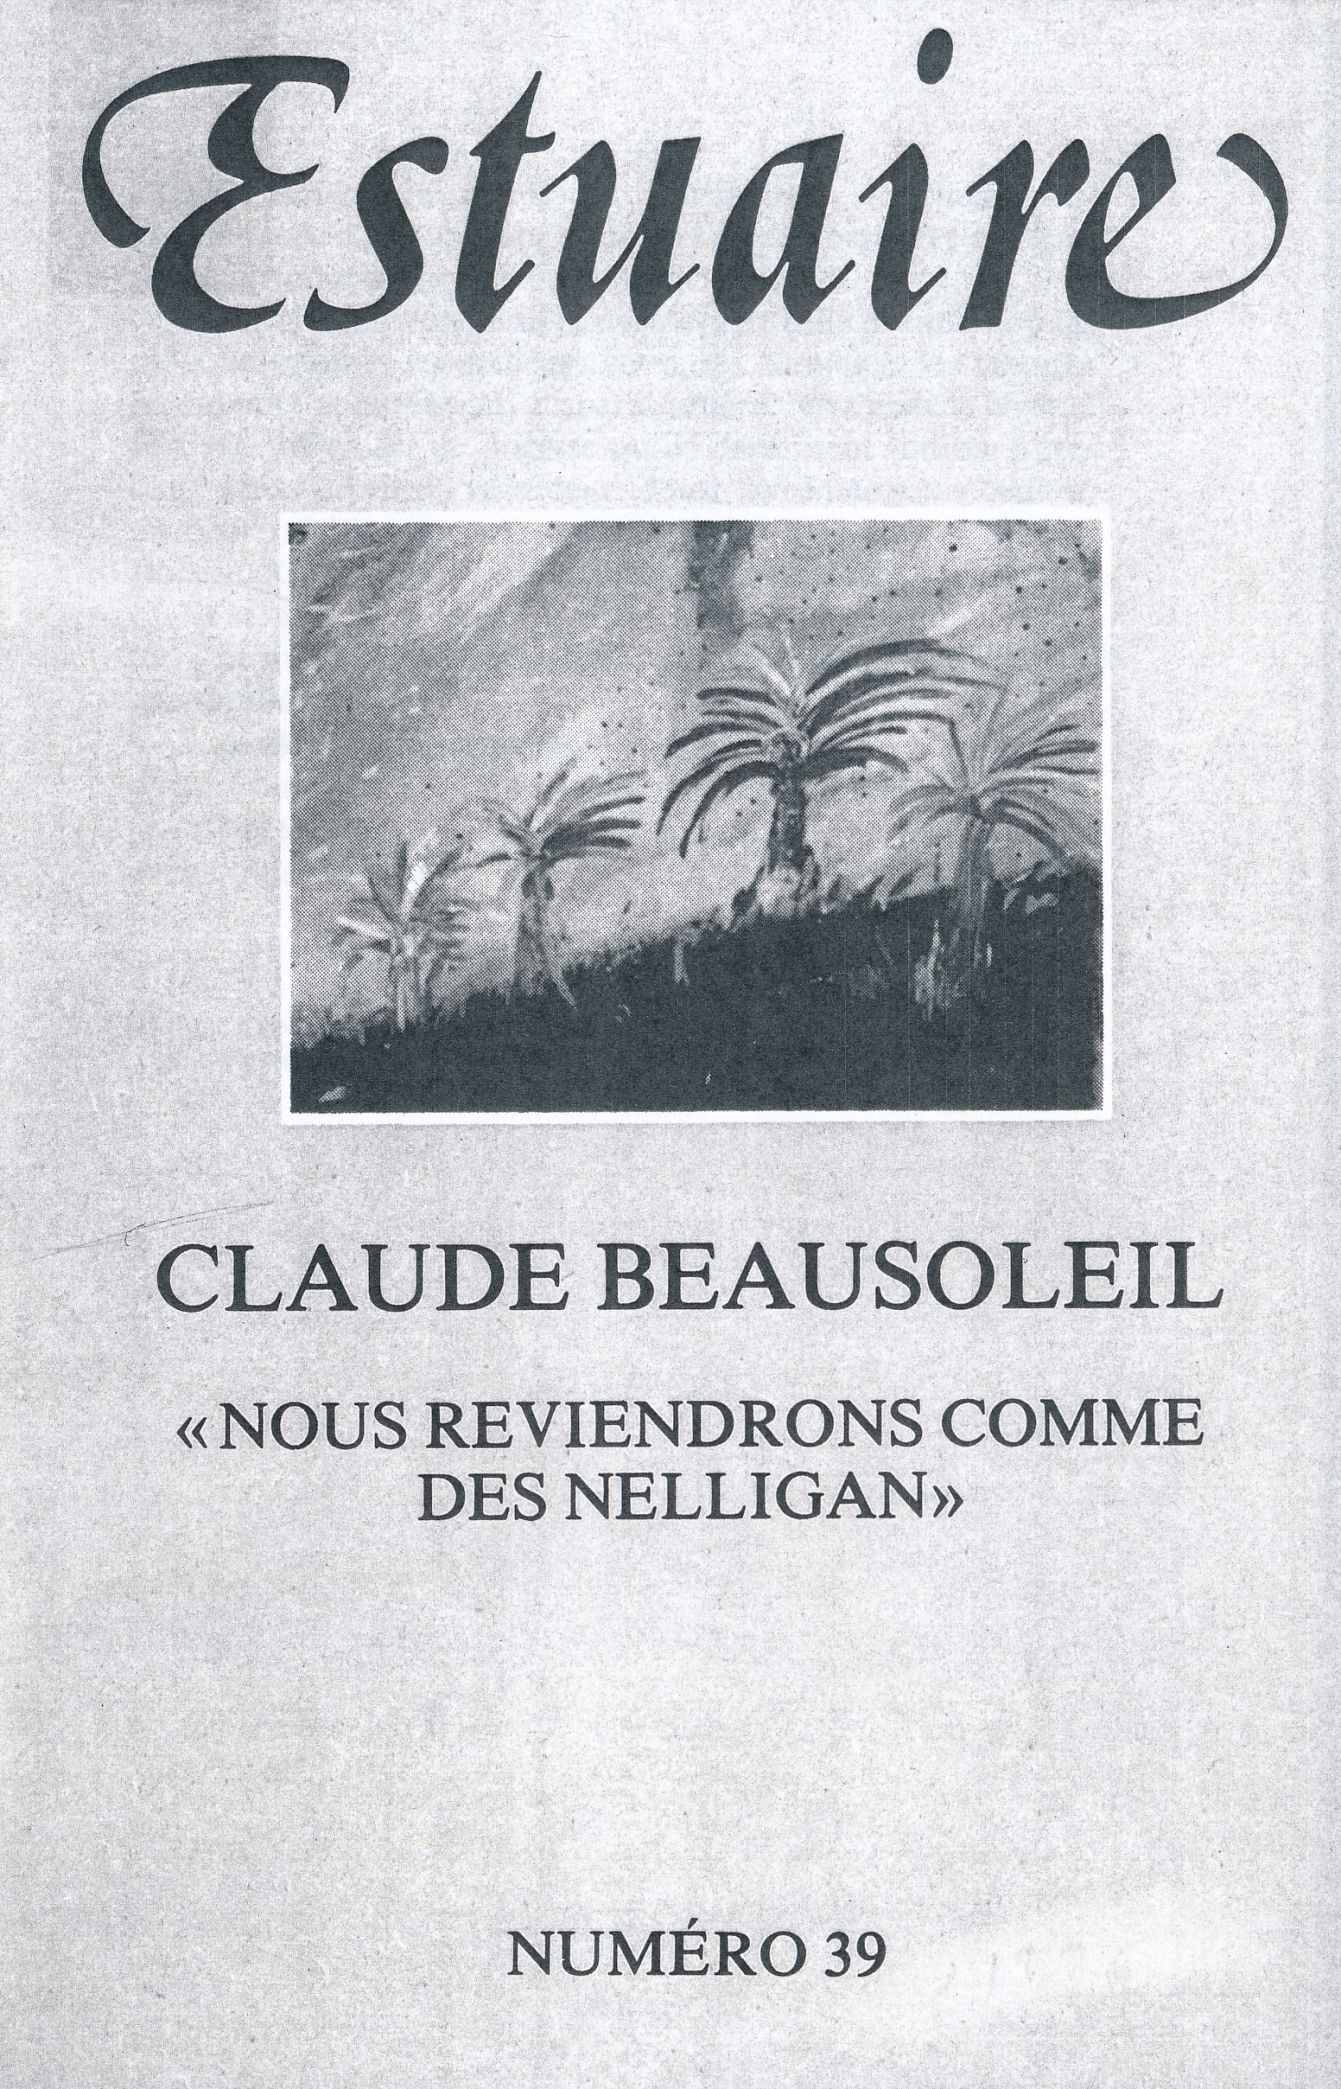 Couverture du périodique Estuaire (Montréal), n° 39, 1986.